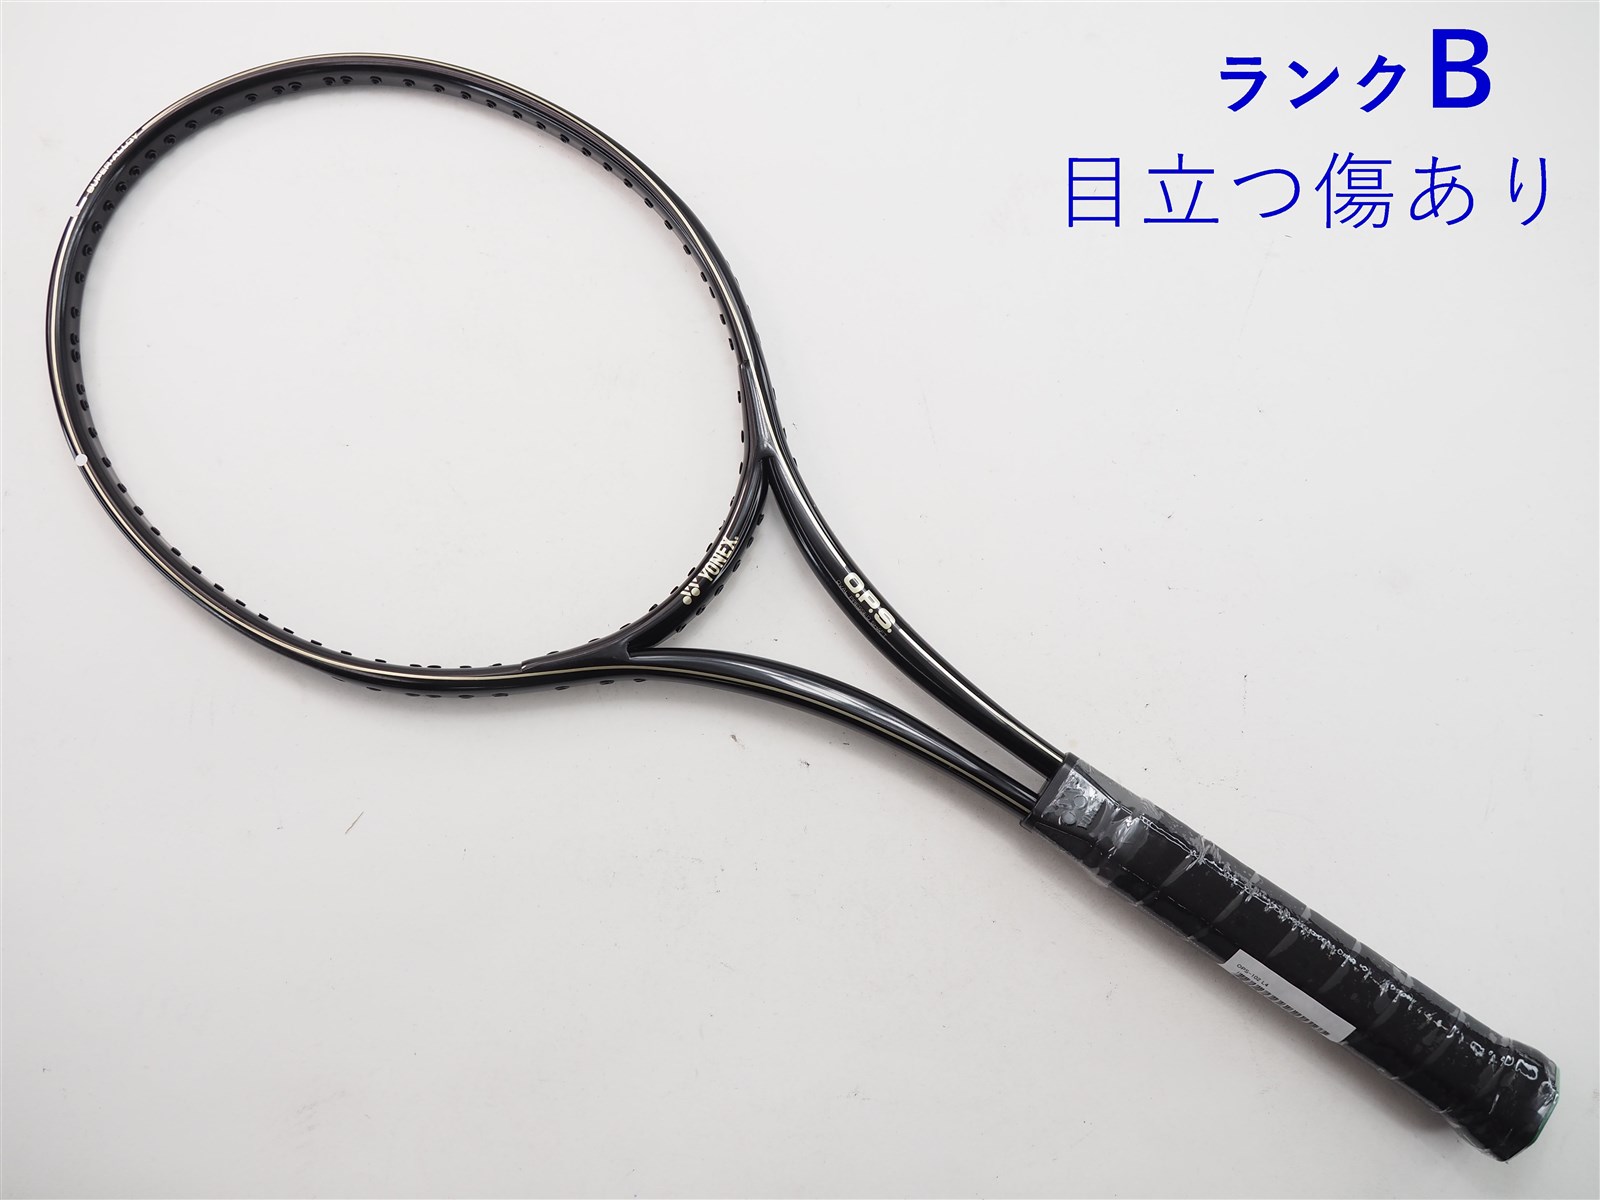 硬式テニス YONEX ヨネックス EZONE OPEN テニスラケット グリップ 